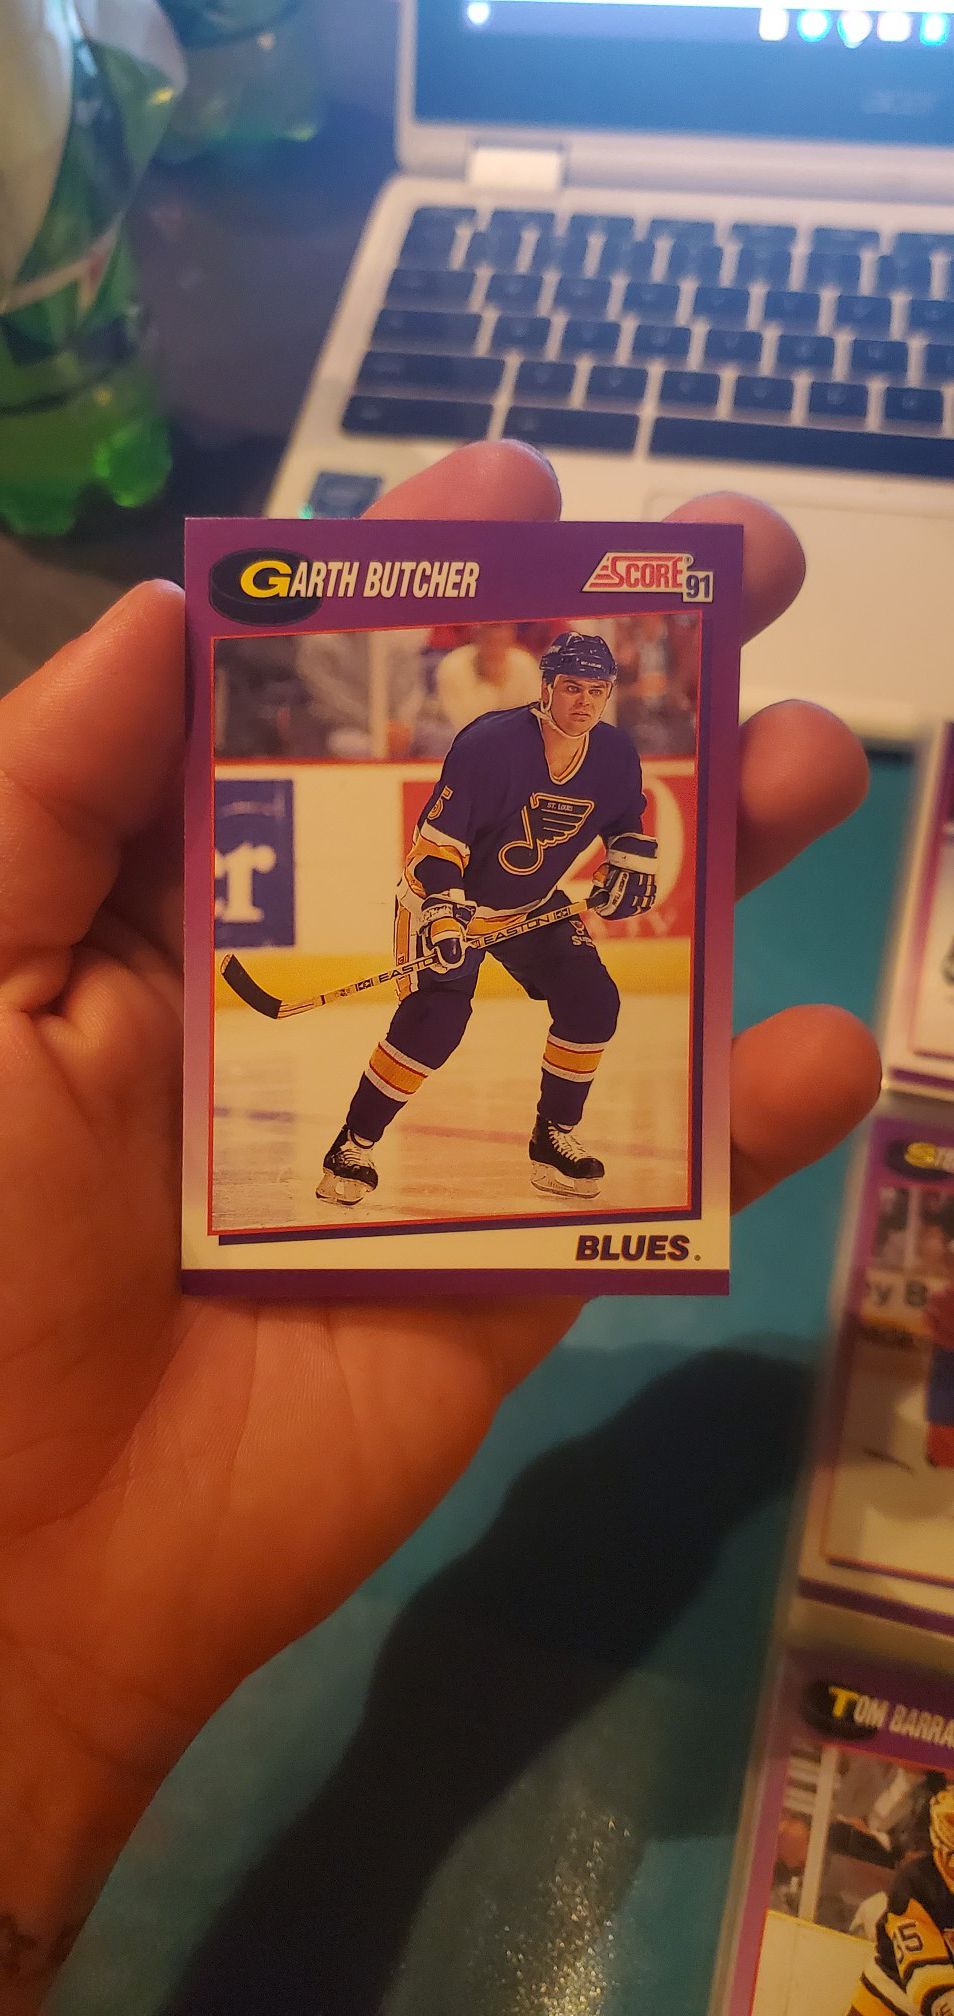 Garth butcher hockey card